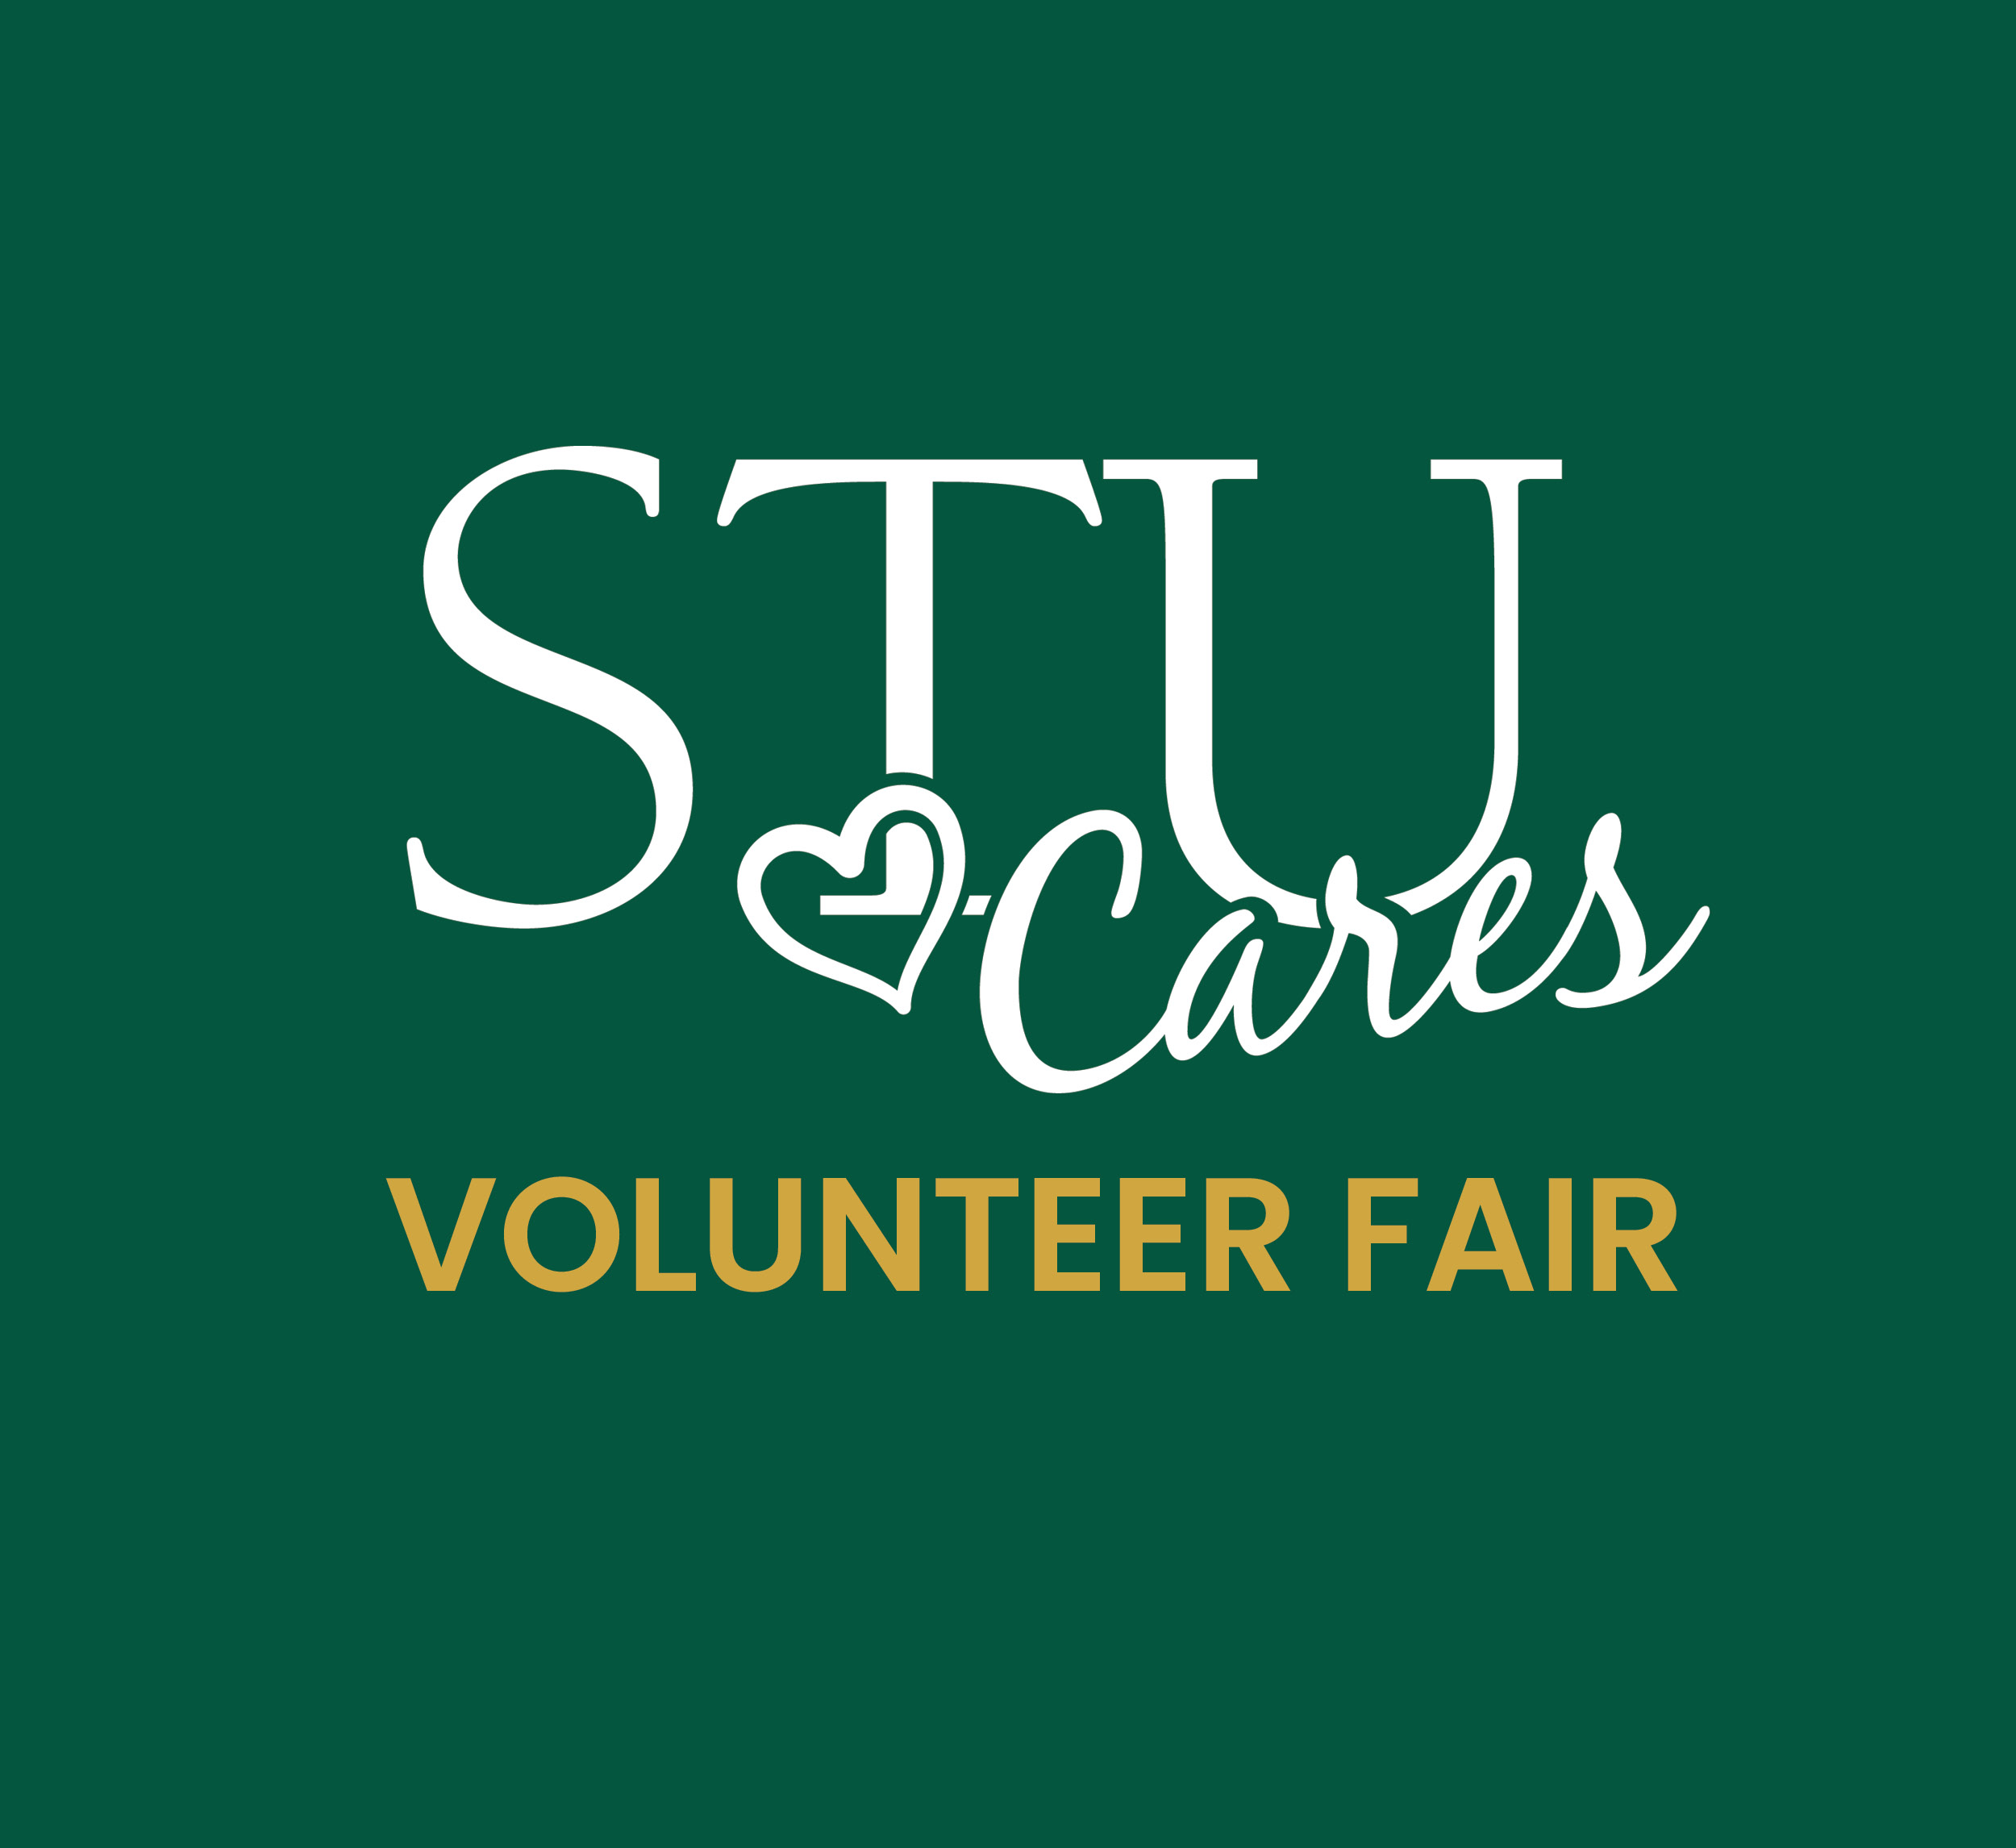 STU Cares Volunteer Fair